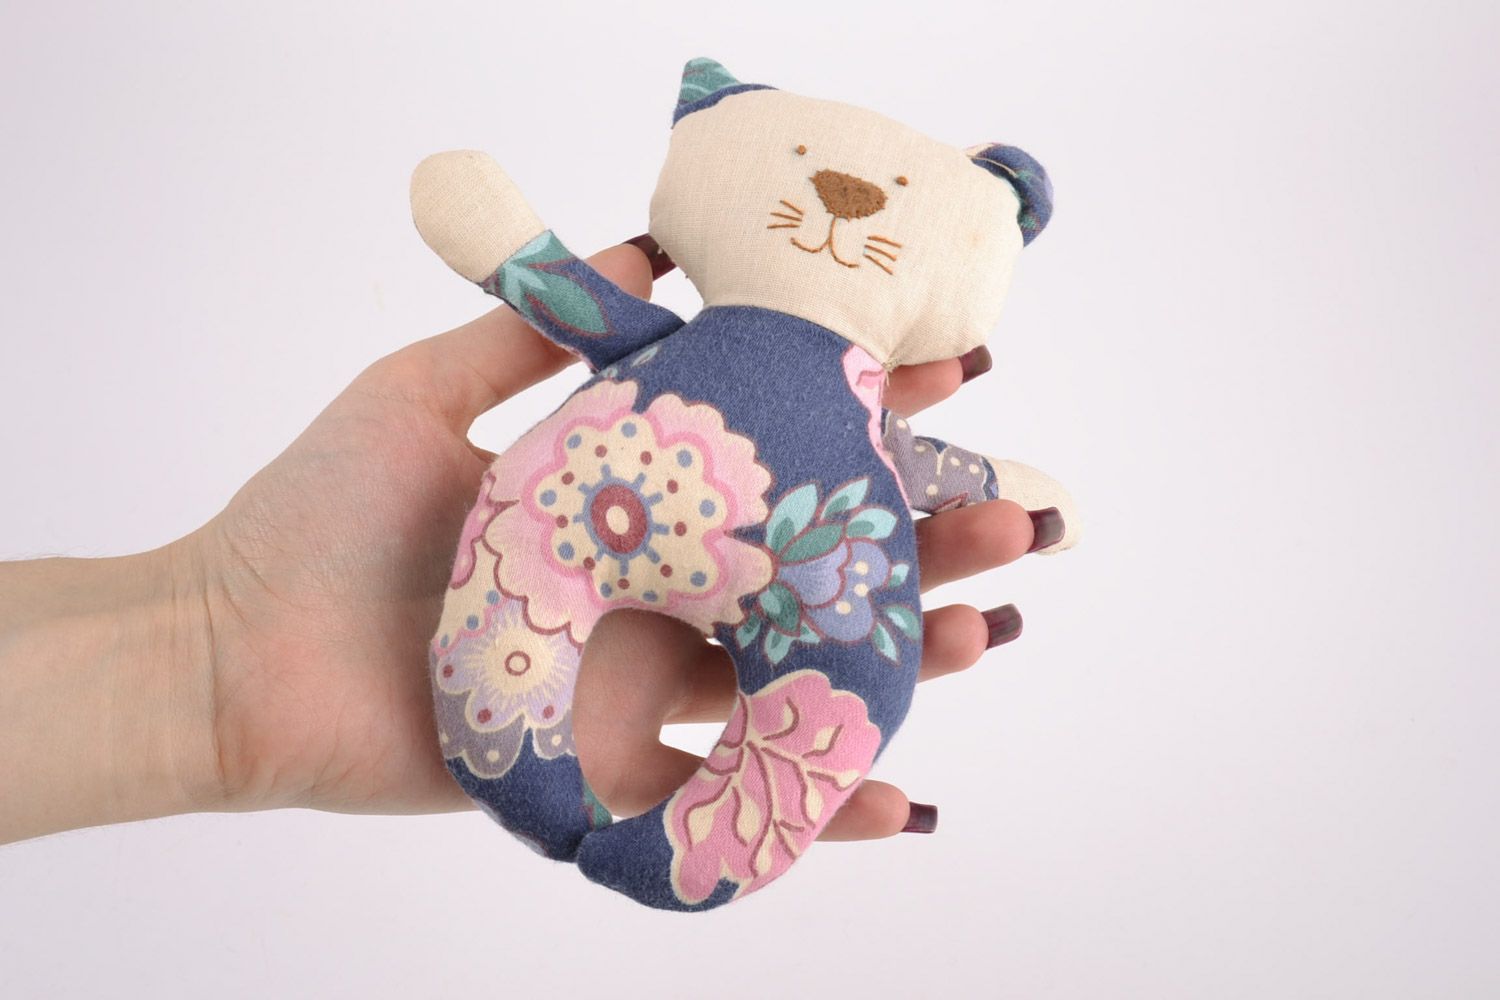 Textil Kuscheltier Kater blumig aus Baumwolle schön handmade Spielzeug für Kinder foto 5